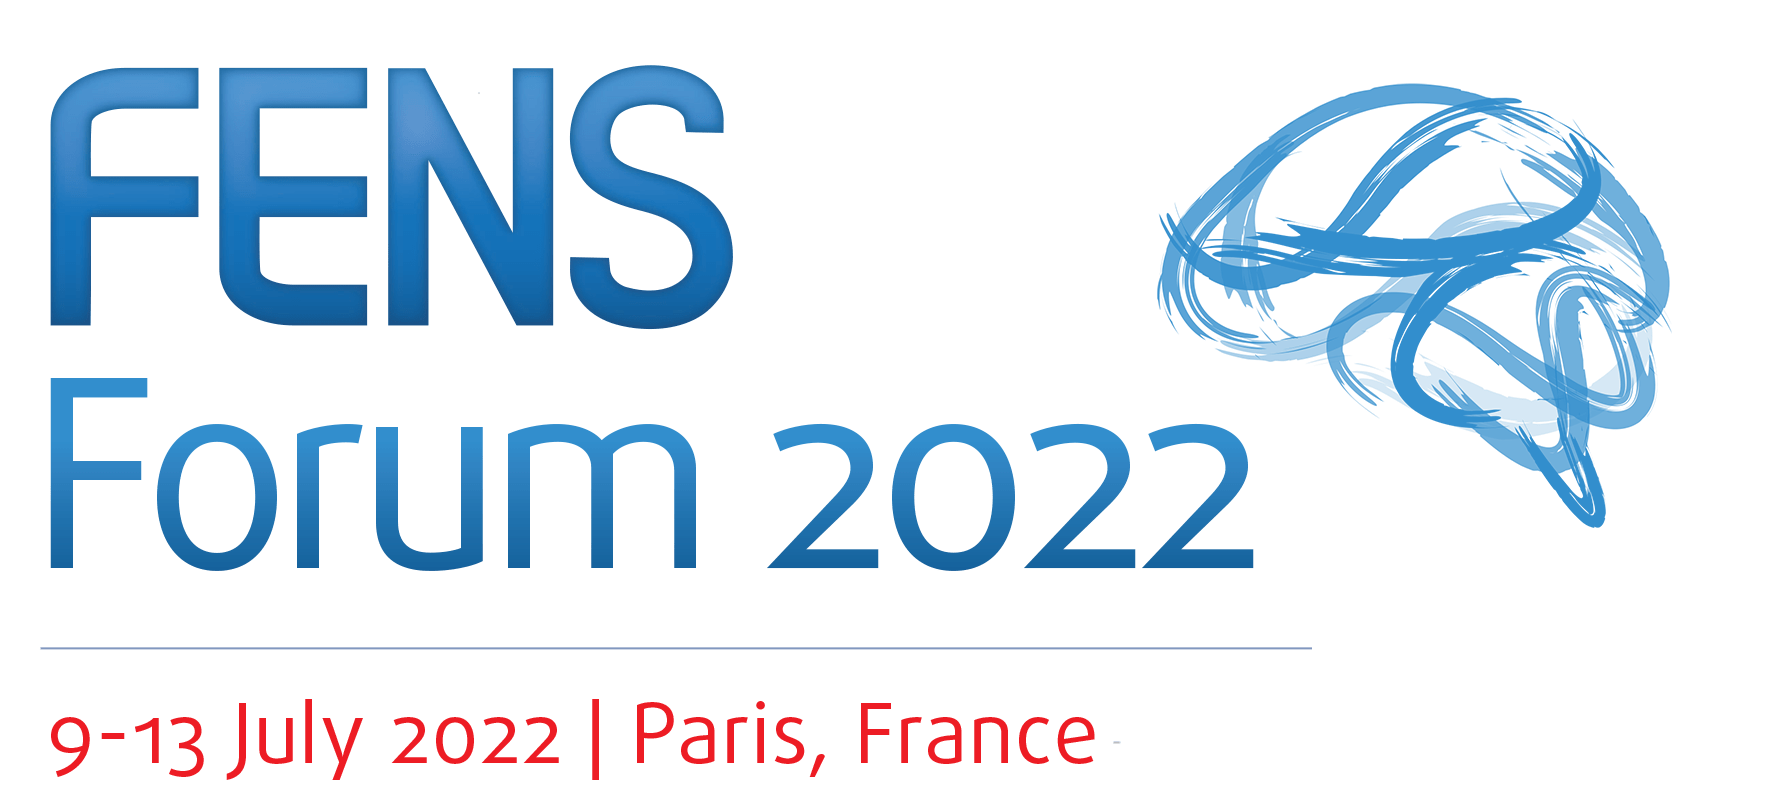 Media Invitation - FENS 2022 - International Neuroscience Conference